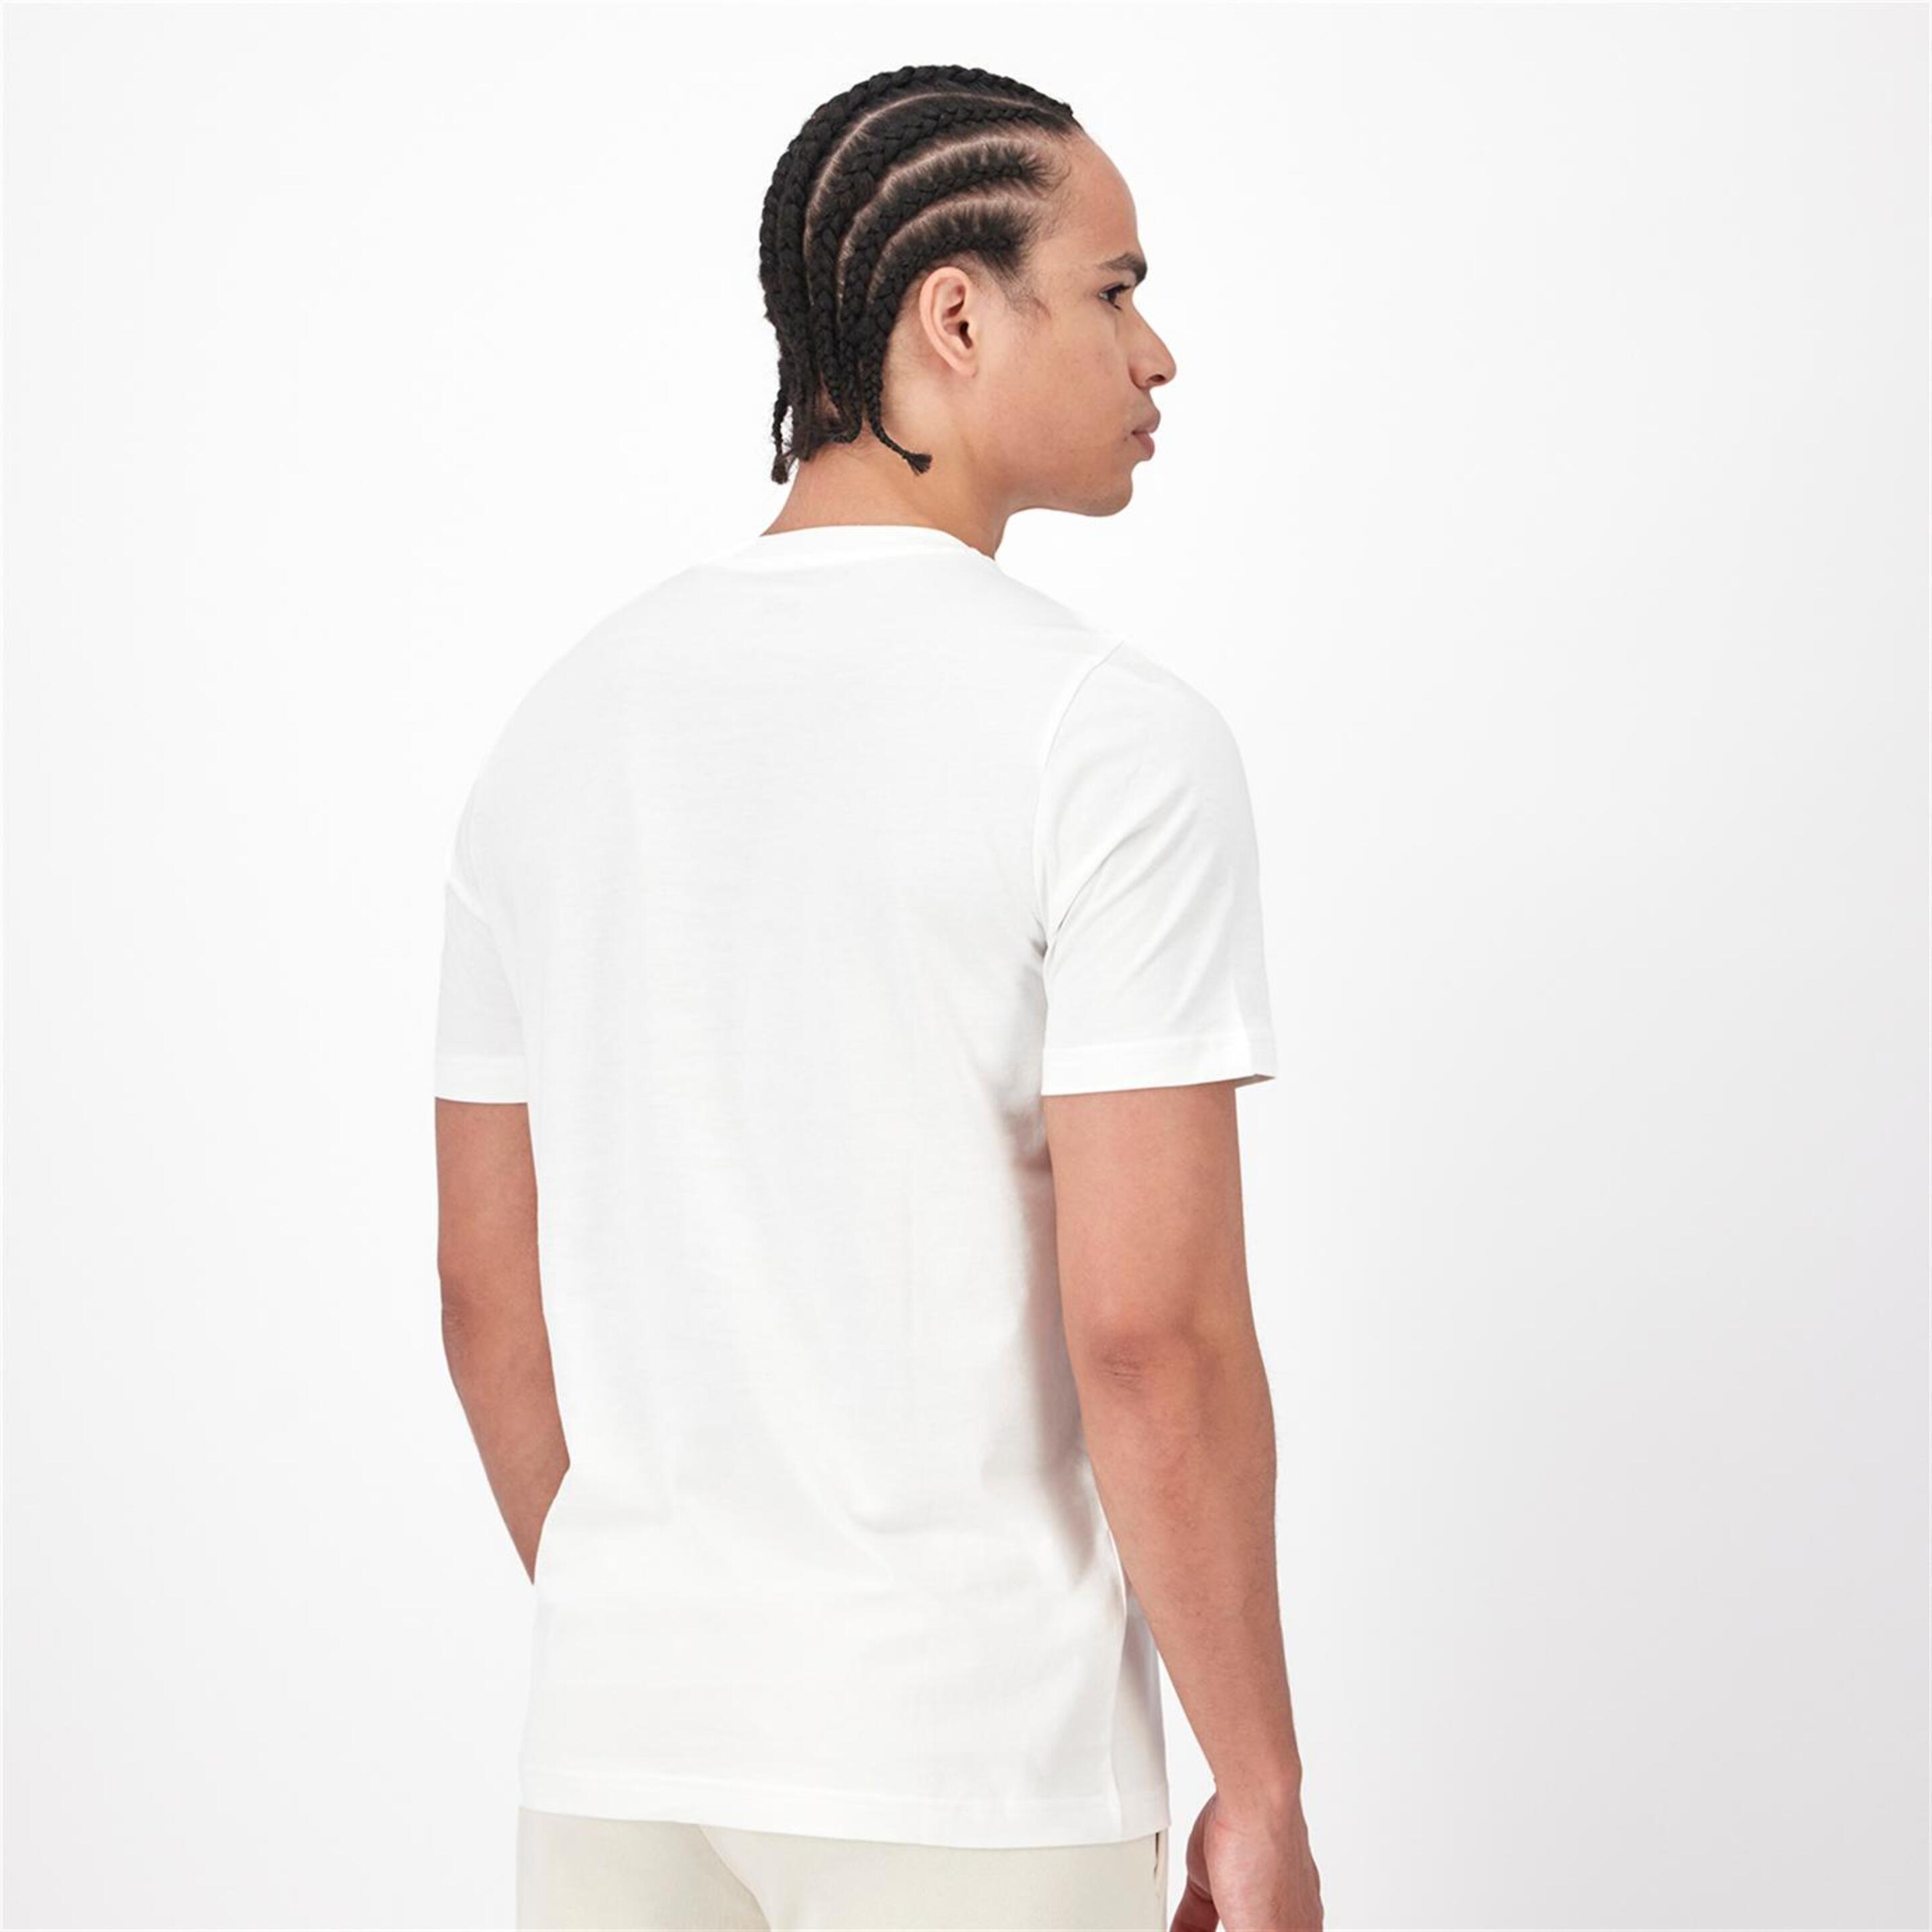 Puma Palm - Blanco - Camiseta Hombre